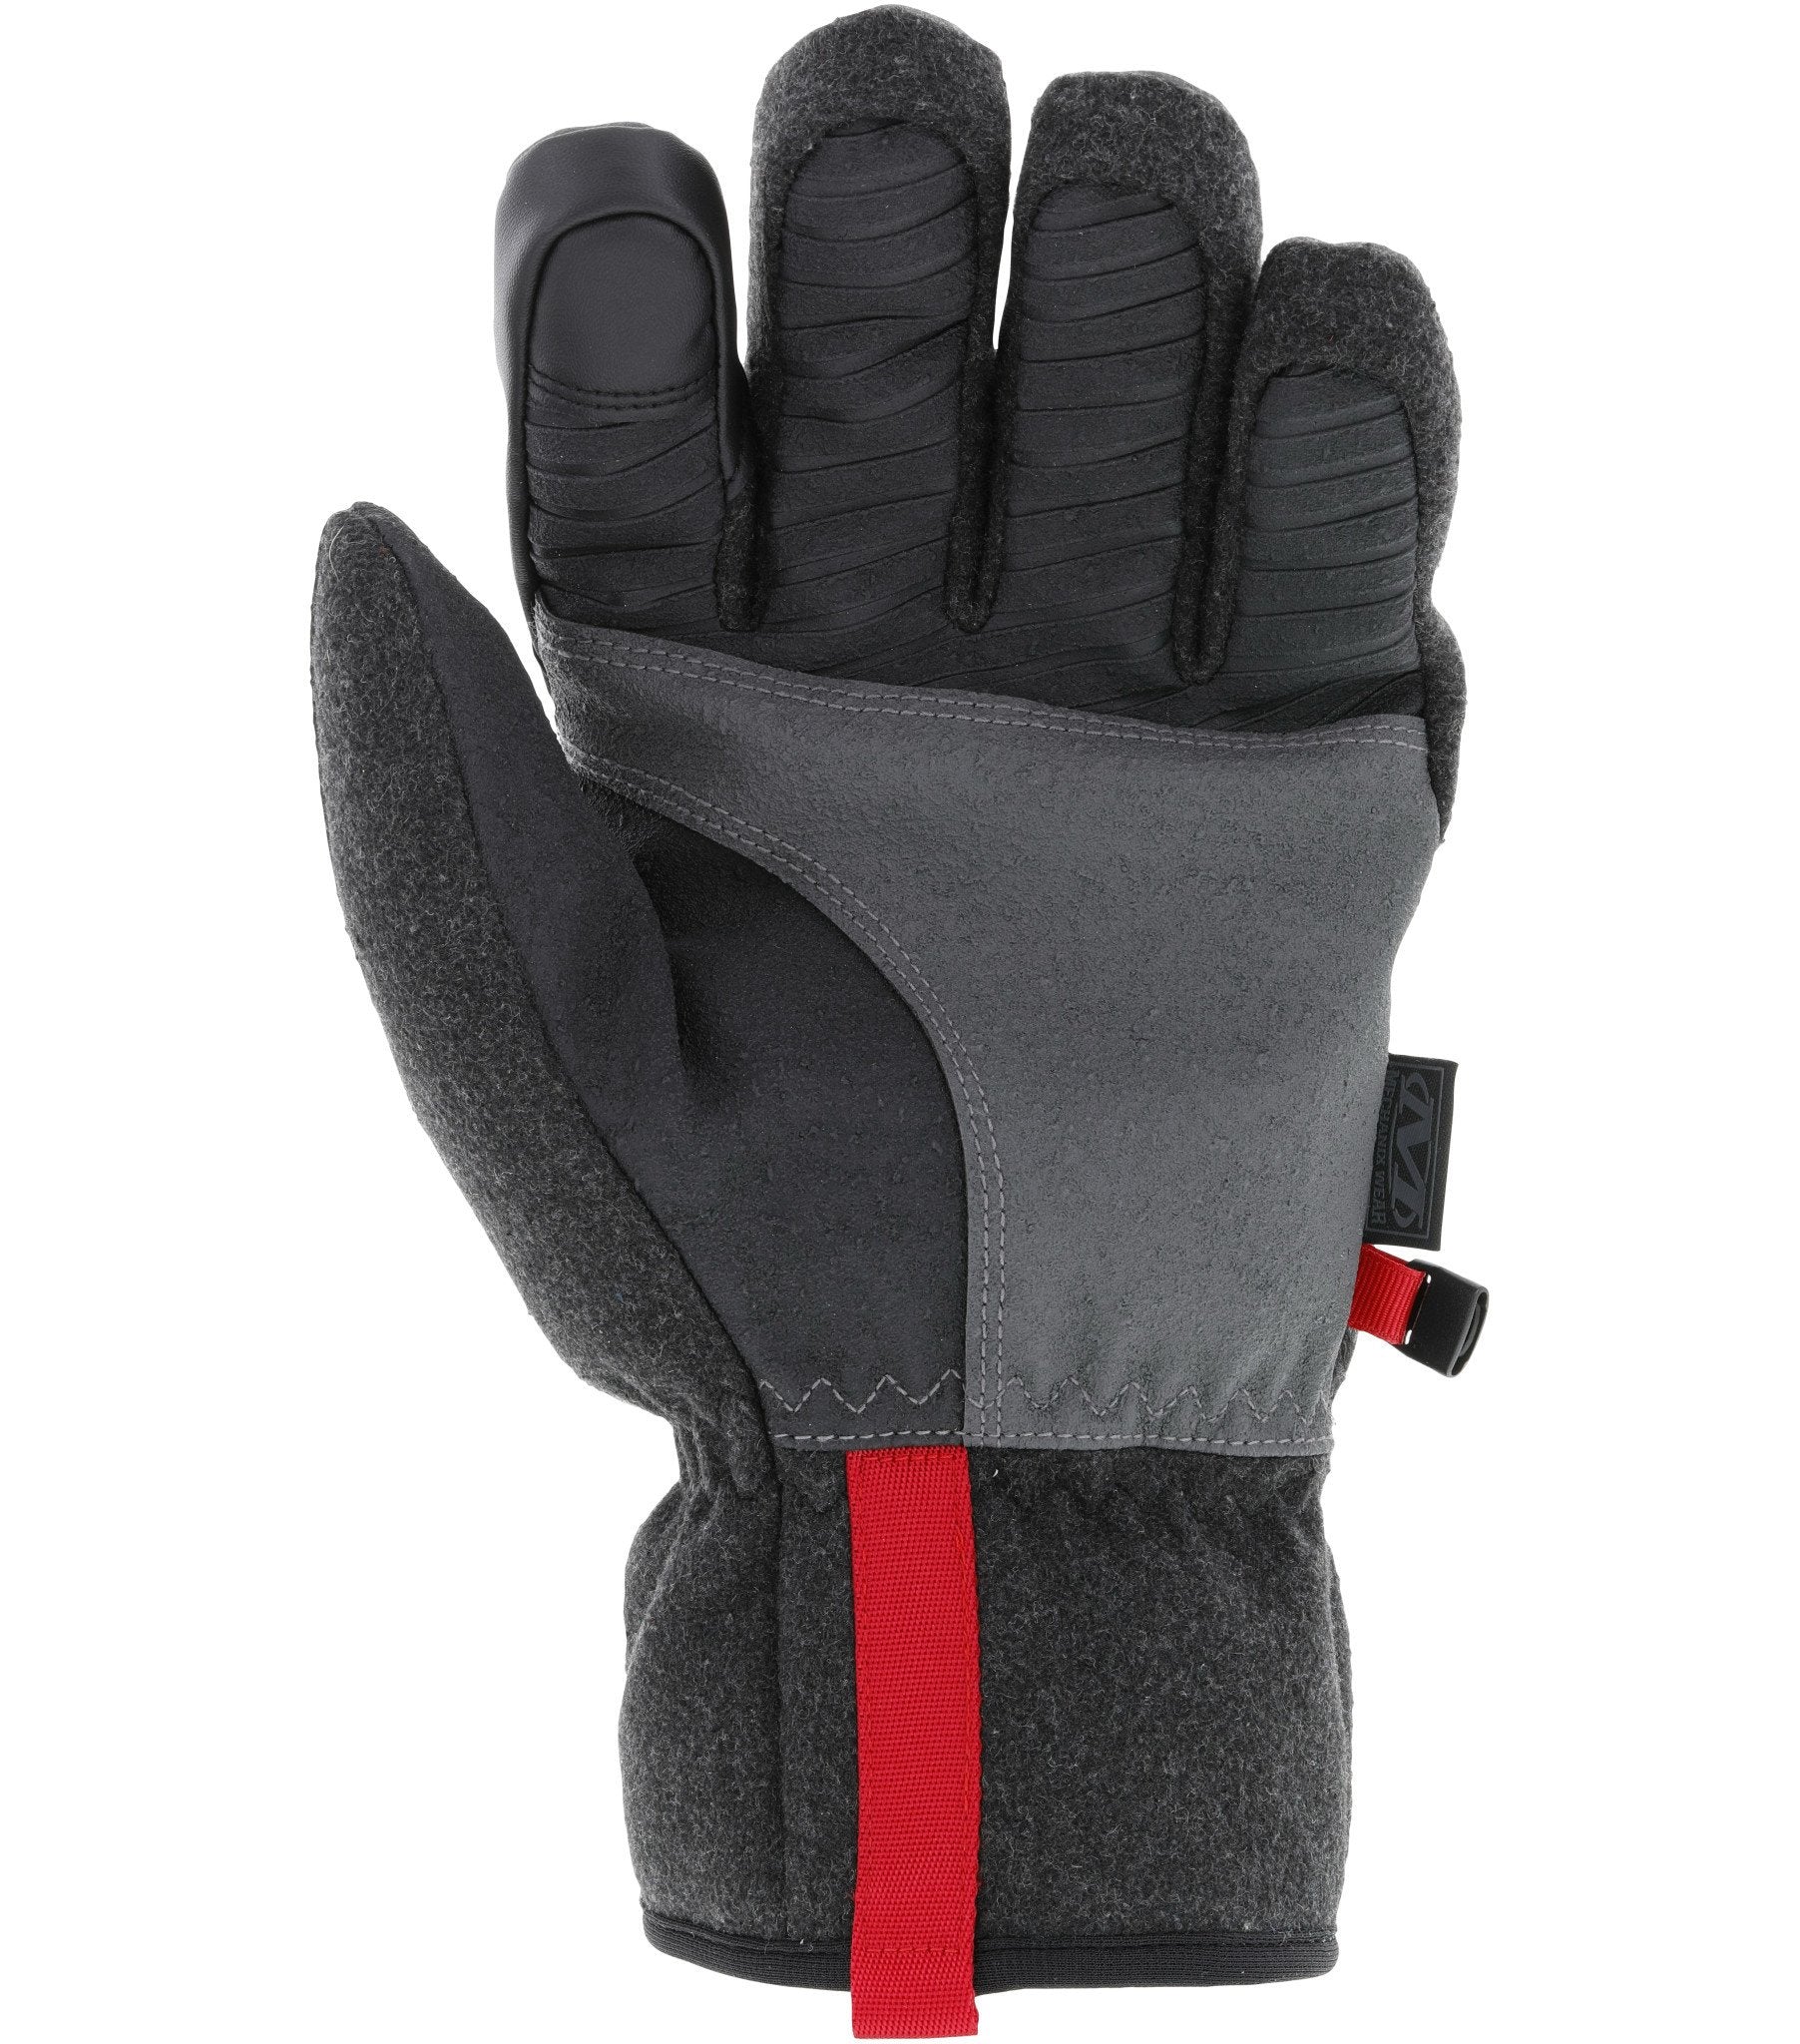  Mechanix Wear: ColdWork Peak Winter Work Gloves